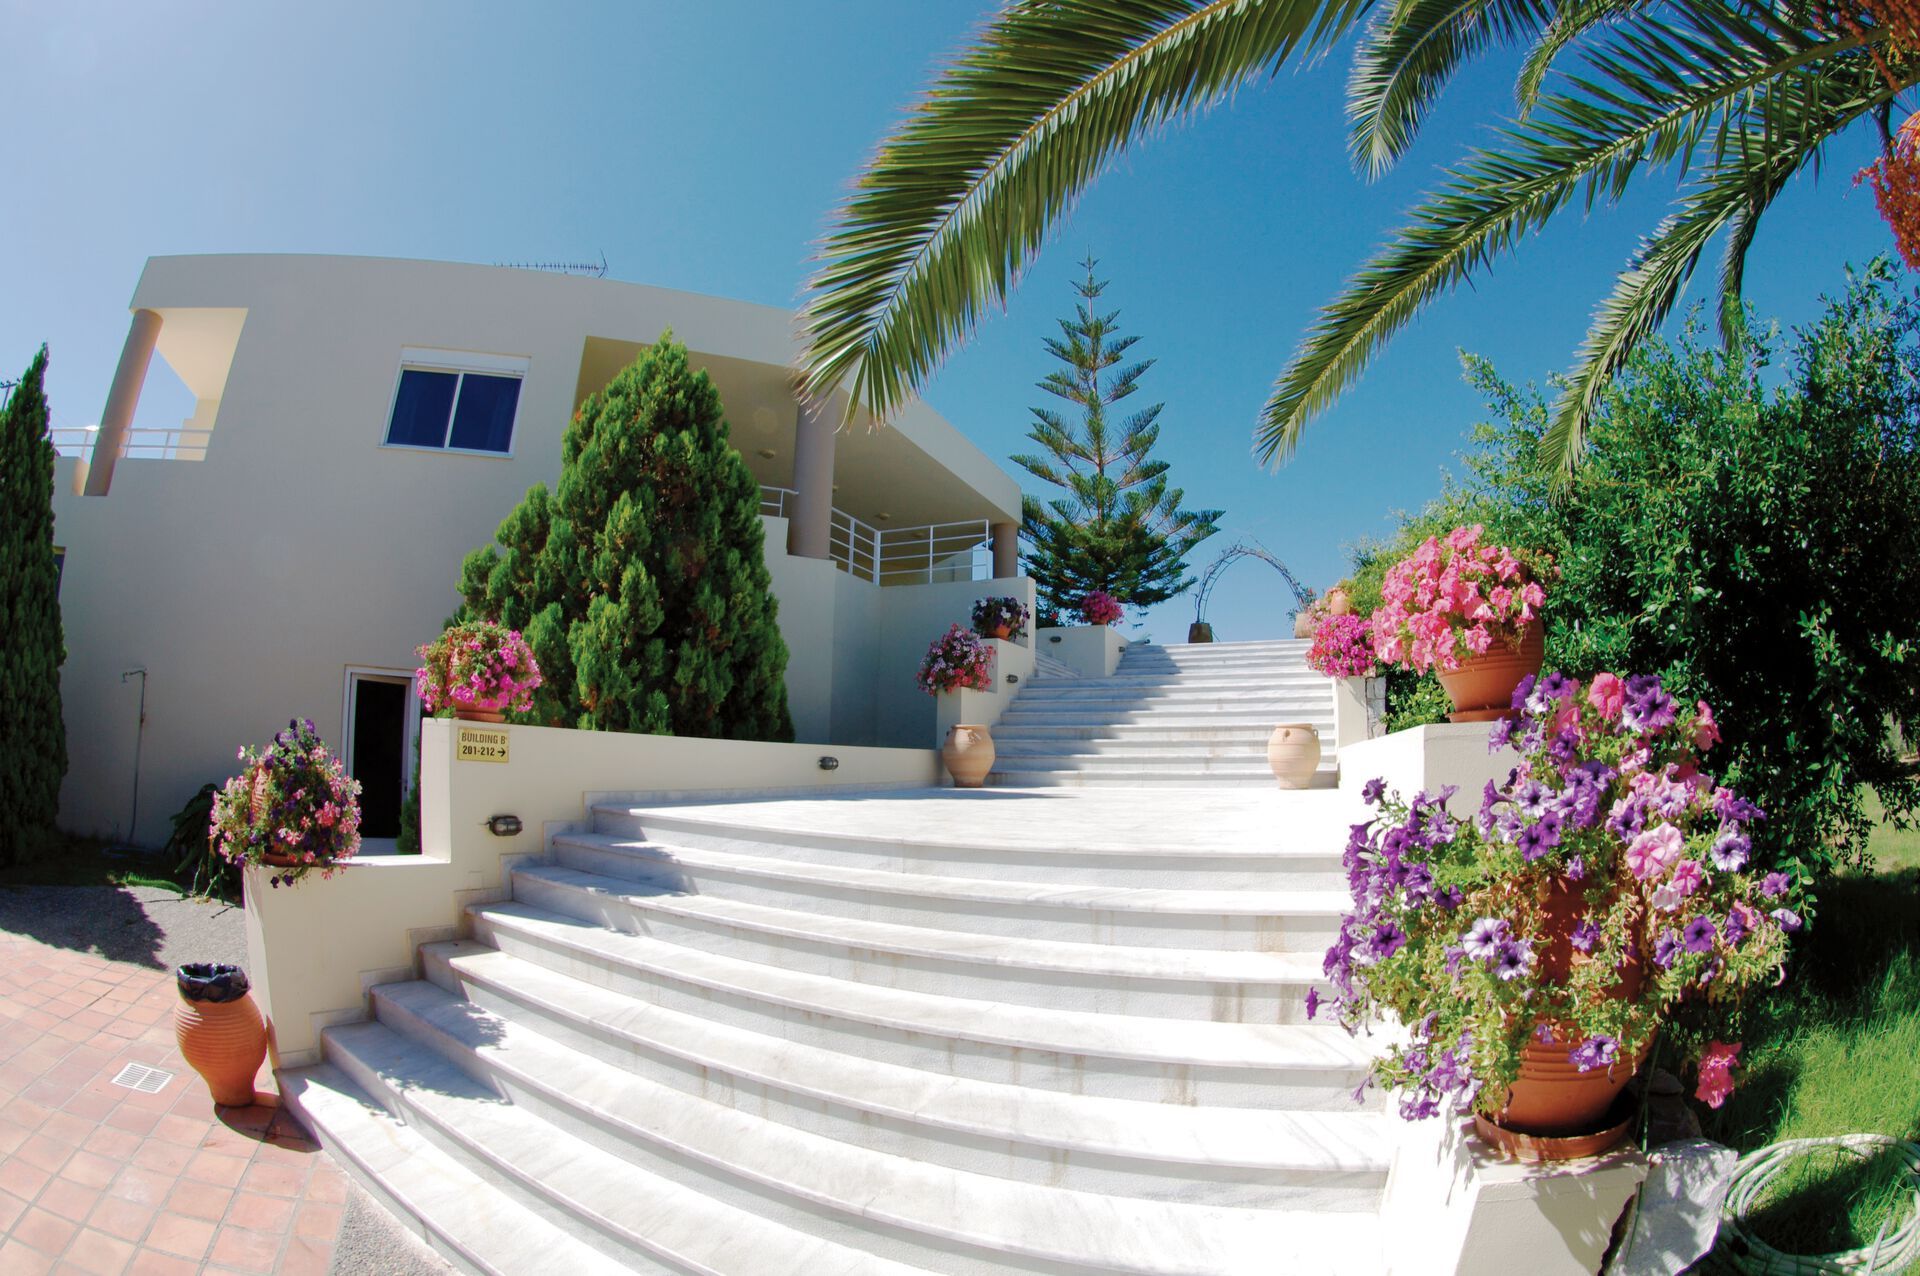 Crète - La Canée - Grèce - Iles grecques - Hotel Eleftheria 3*